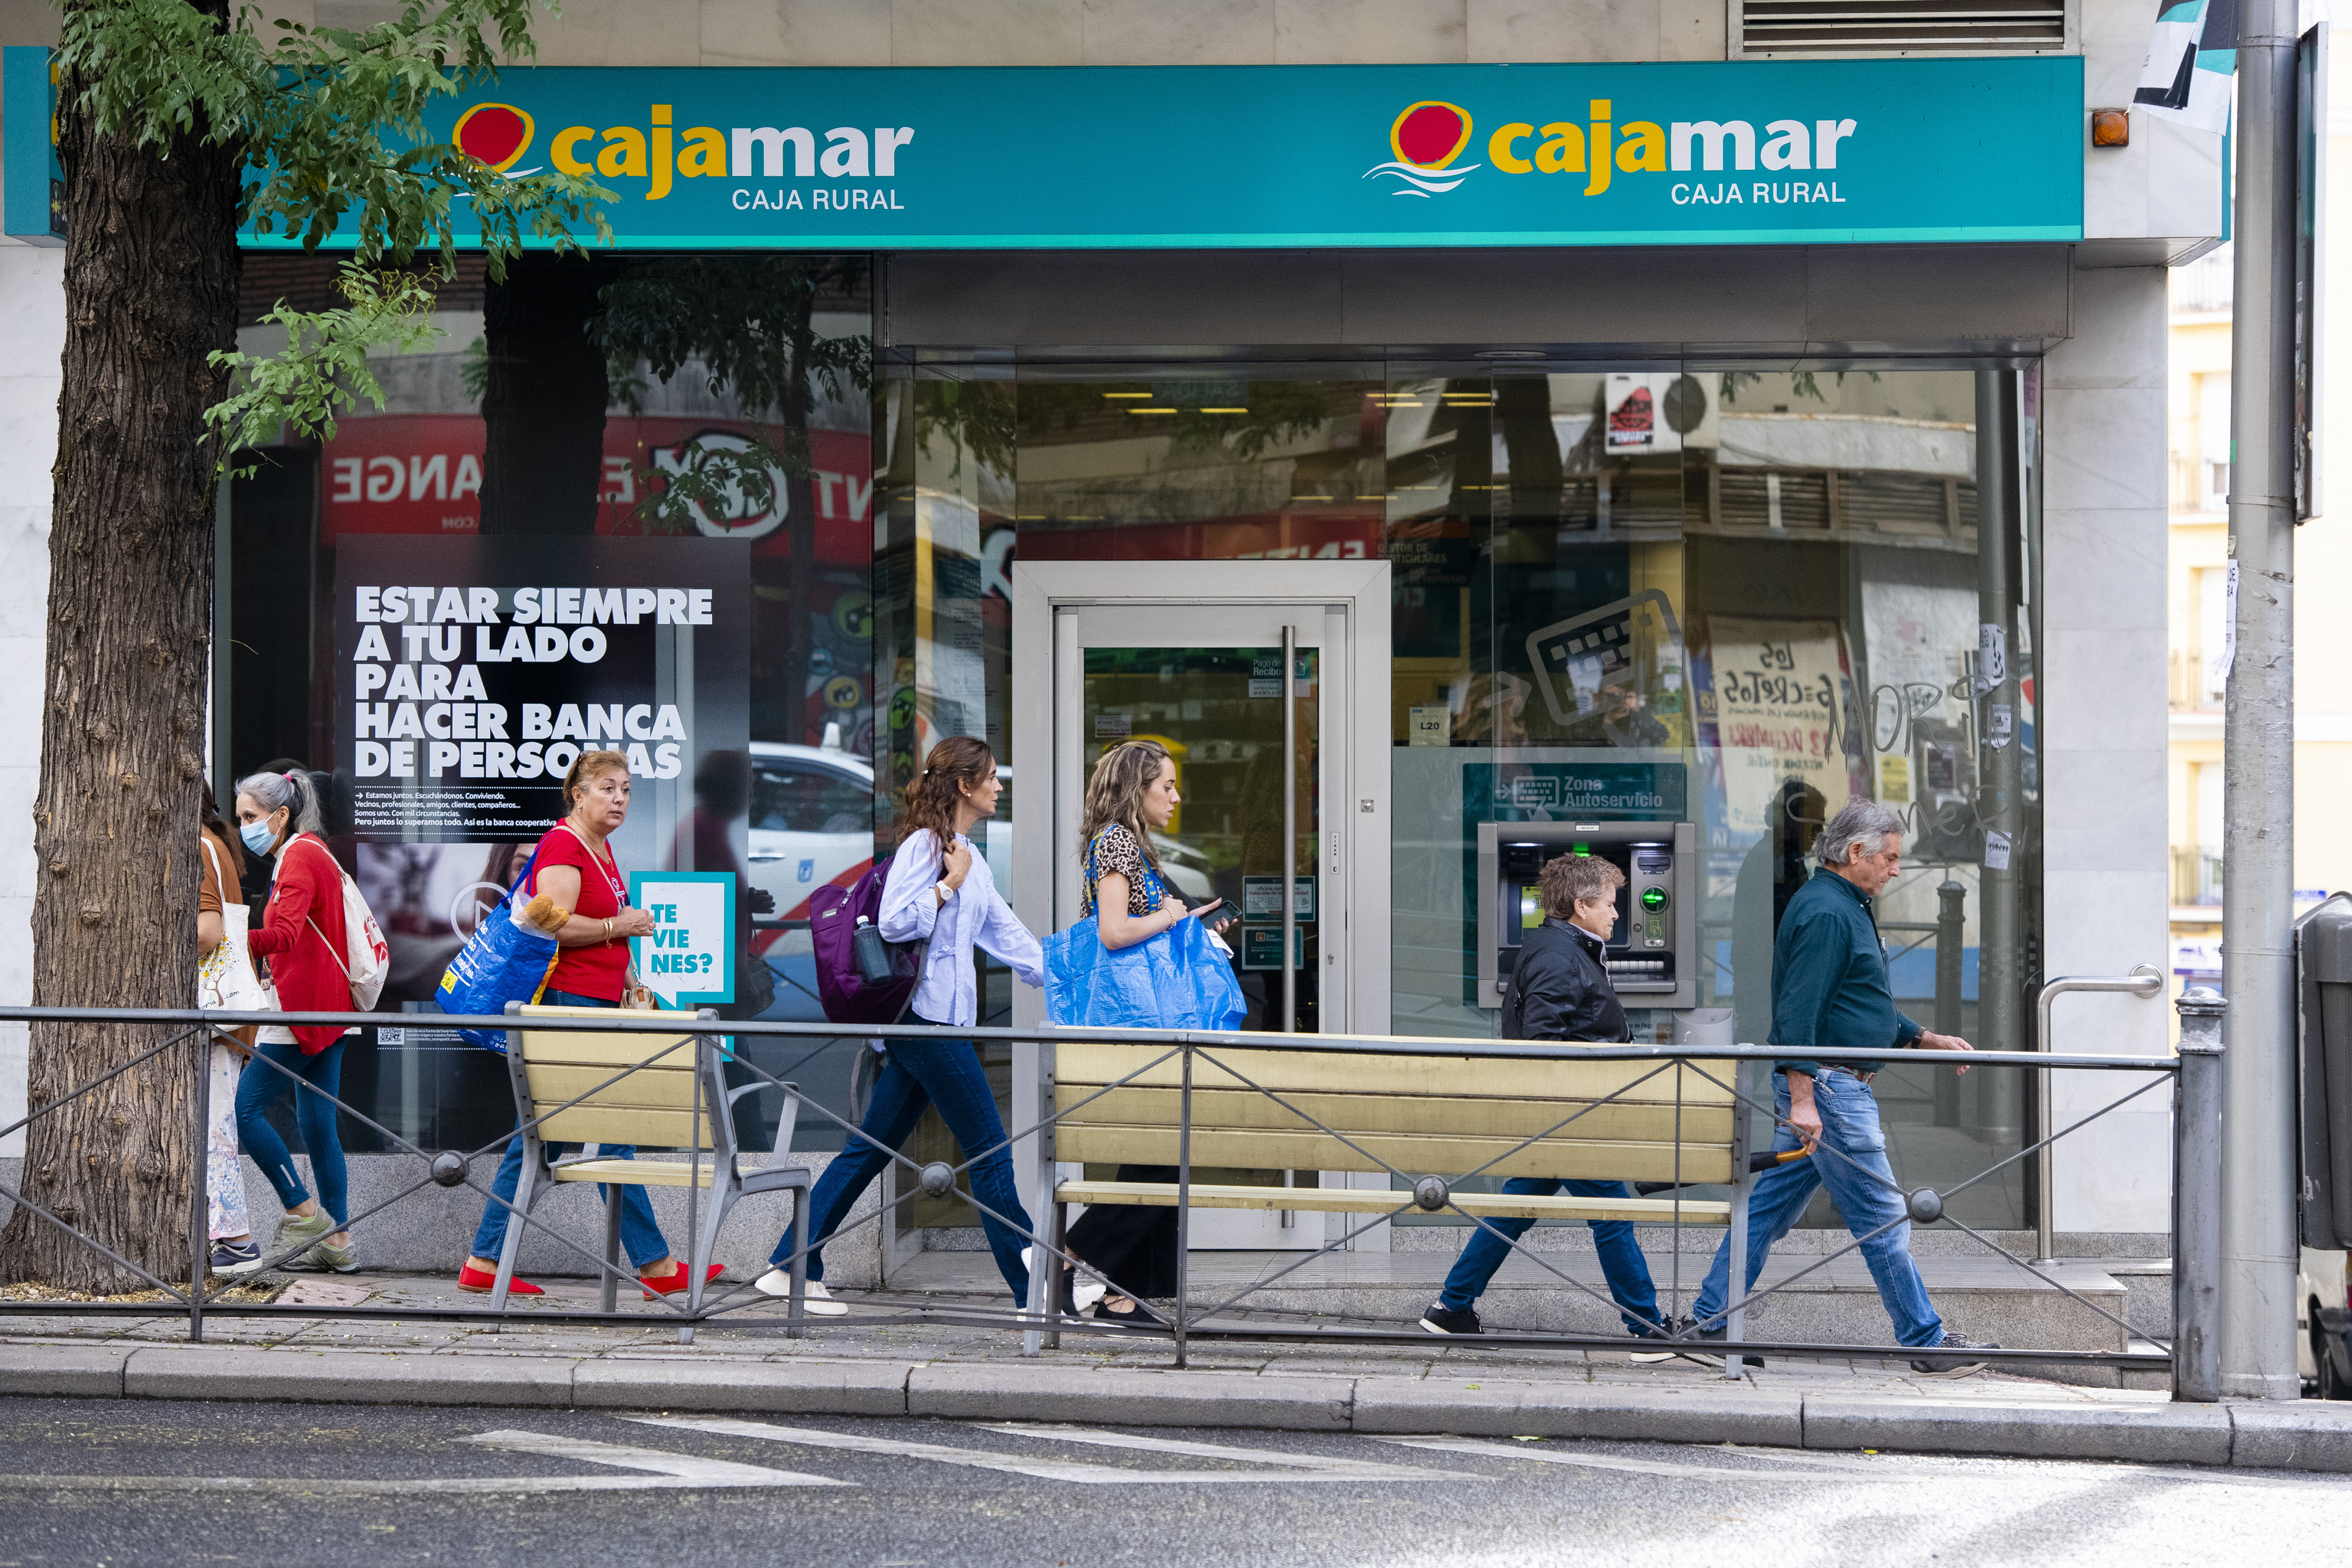 Cajamar sufre desde el jueves una caída generalizada de sus canales digitales y medios de pago